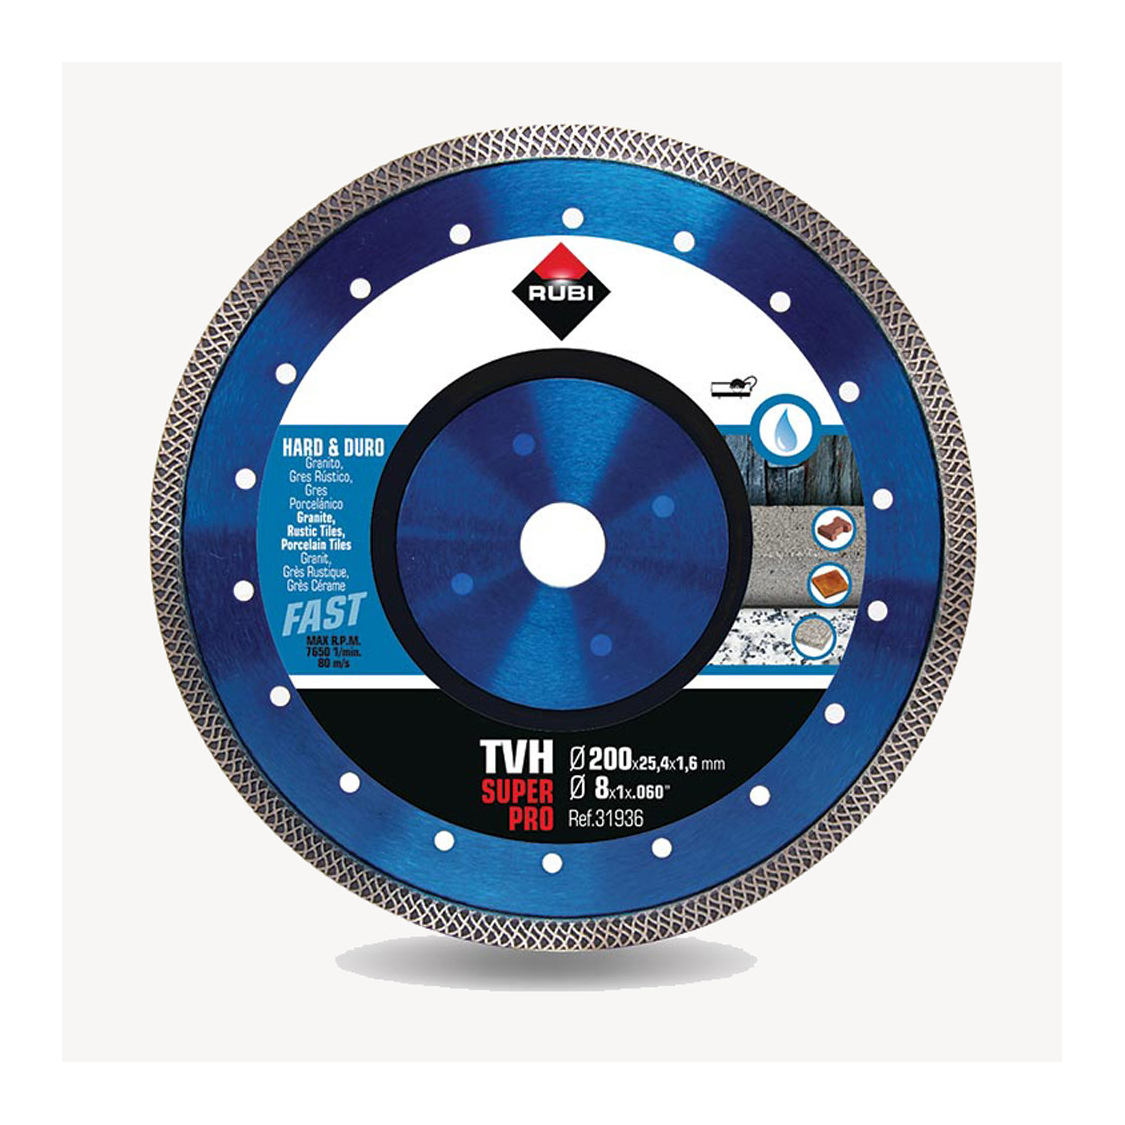 Disque diamanté Turbo Viper (TVH) - Ø 200 mm coupe à eau